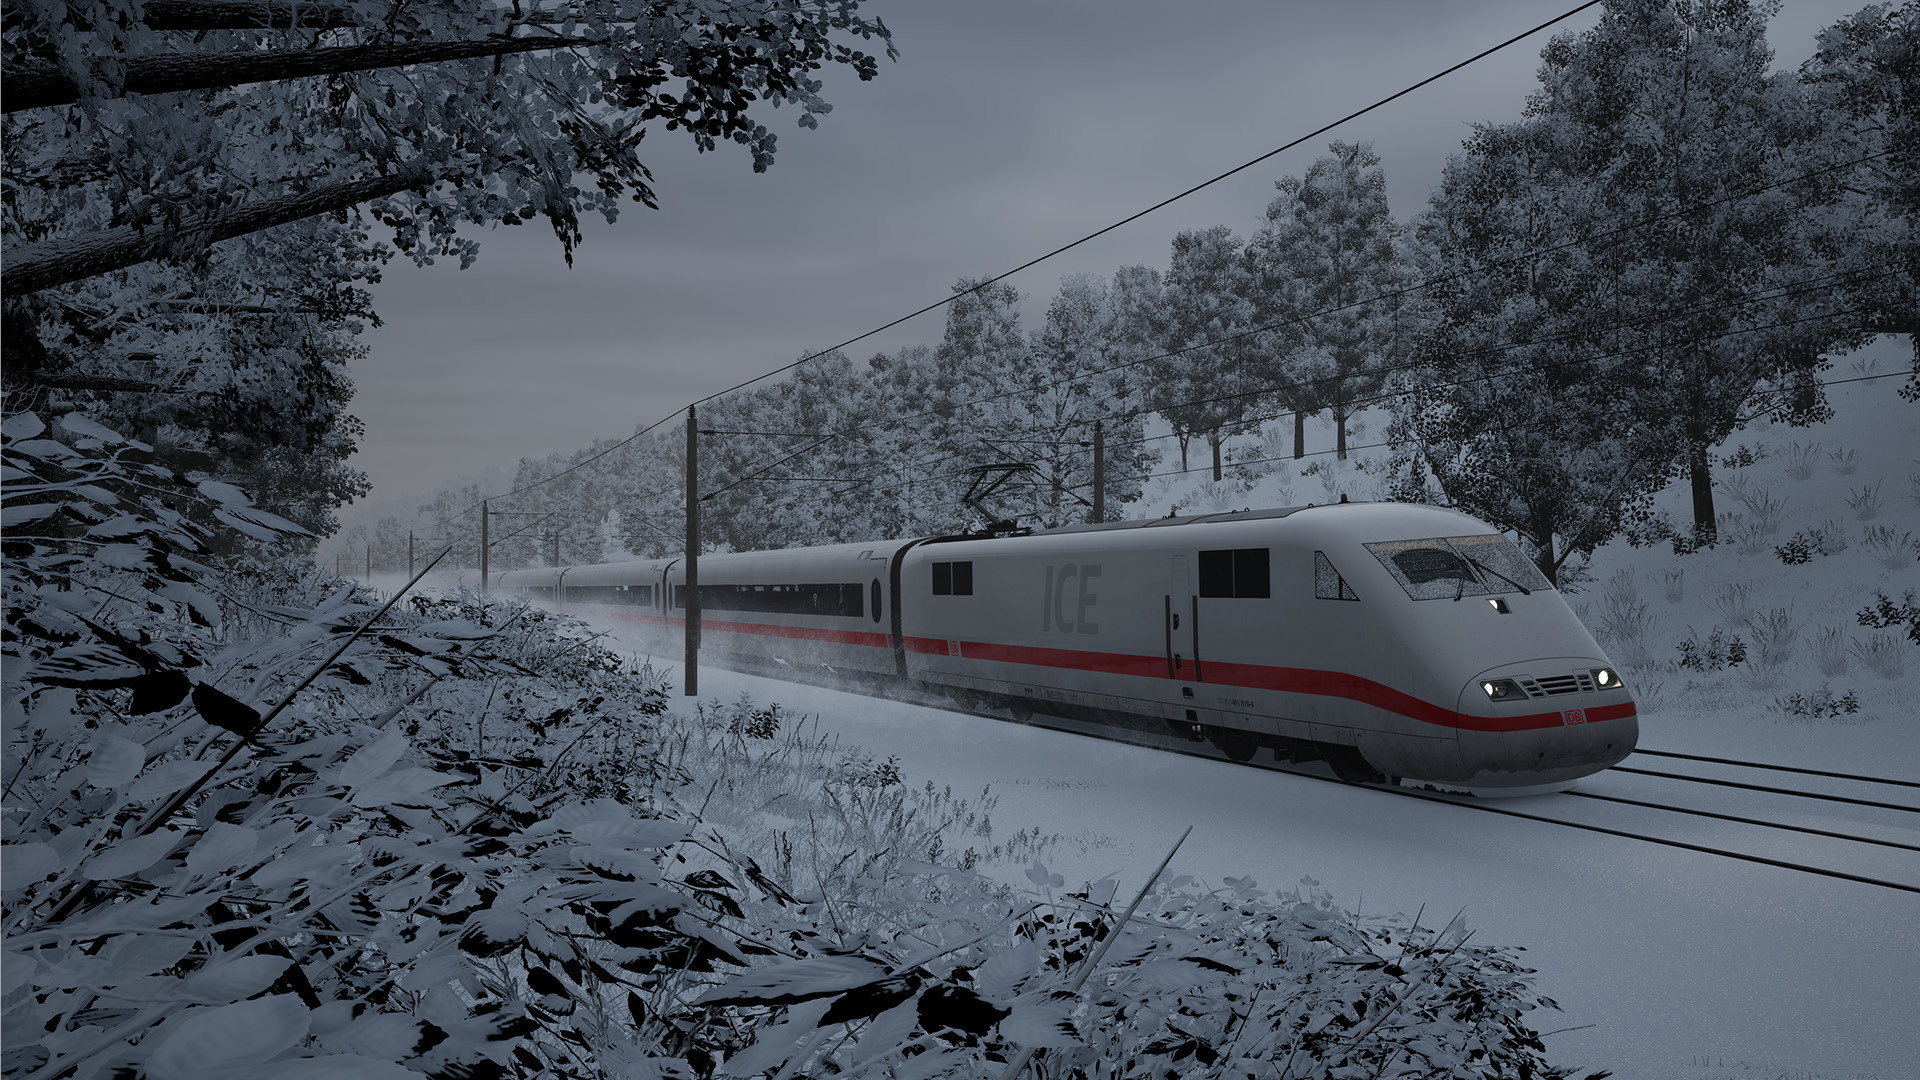 Train Sim World 3: Deluxe Edition Steam Account